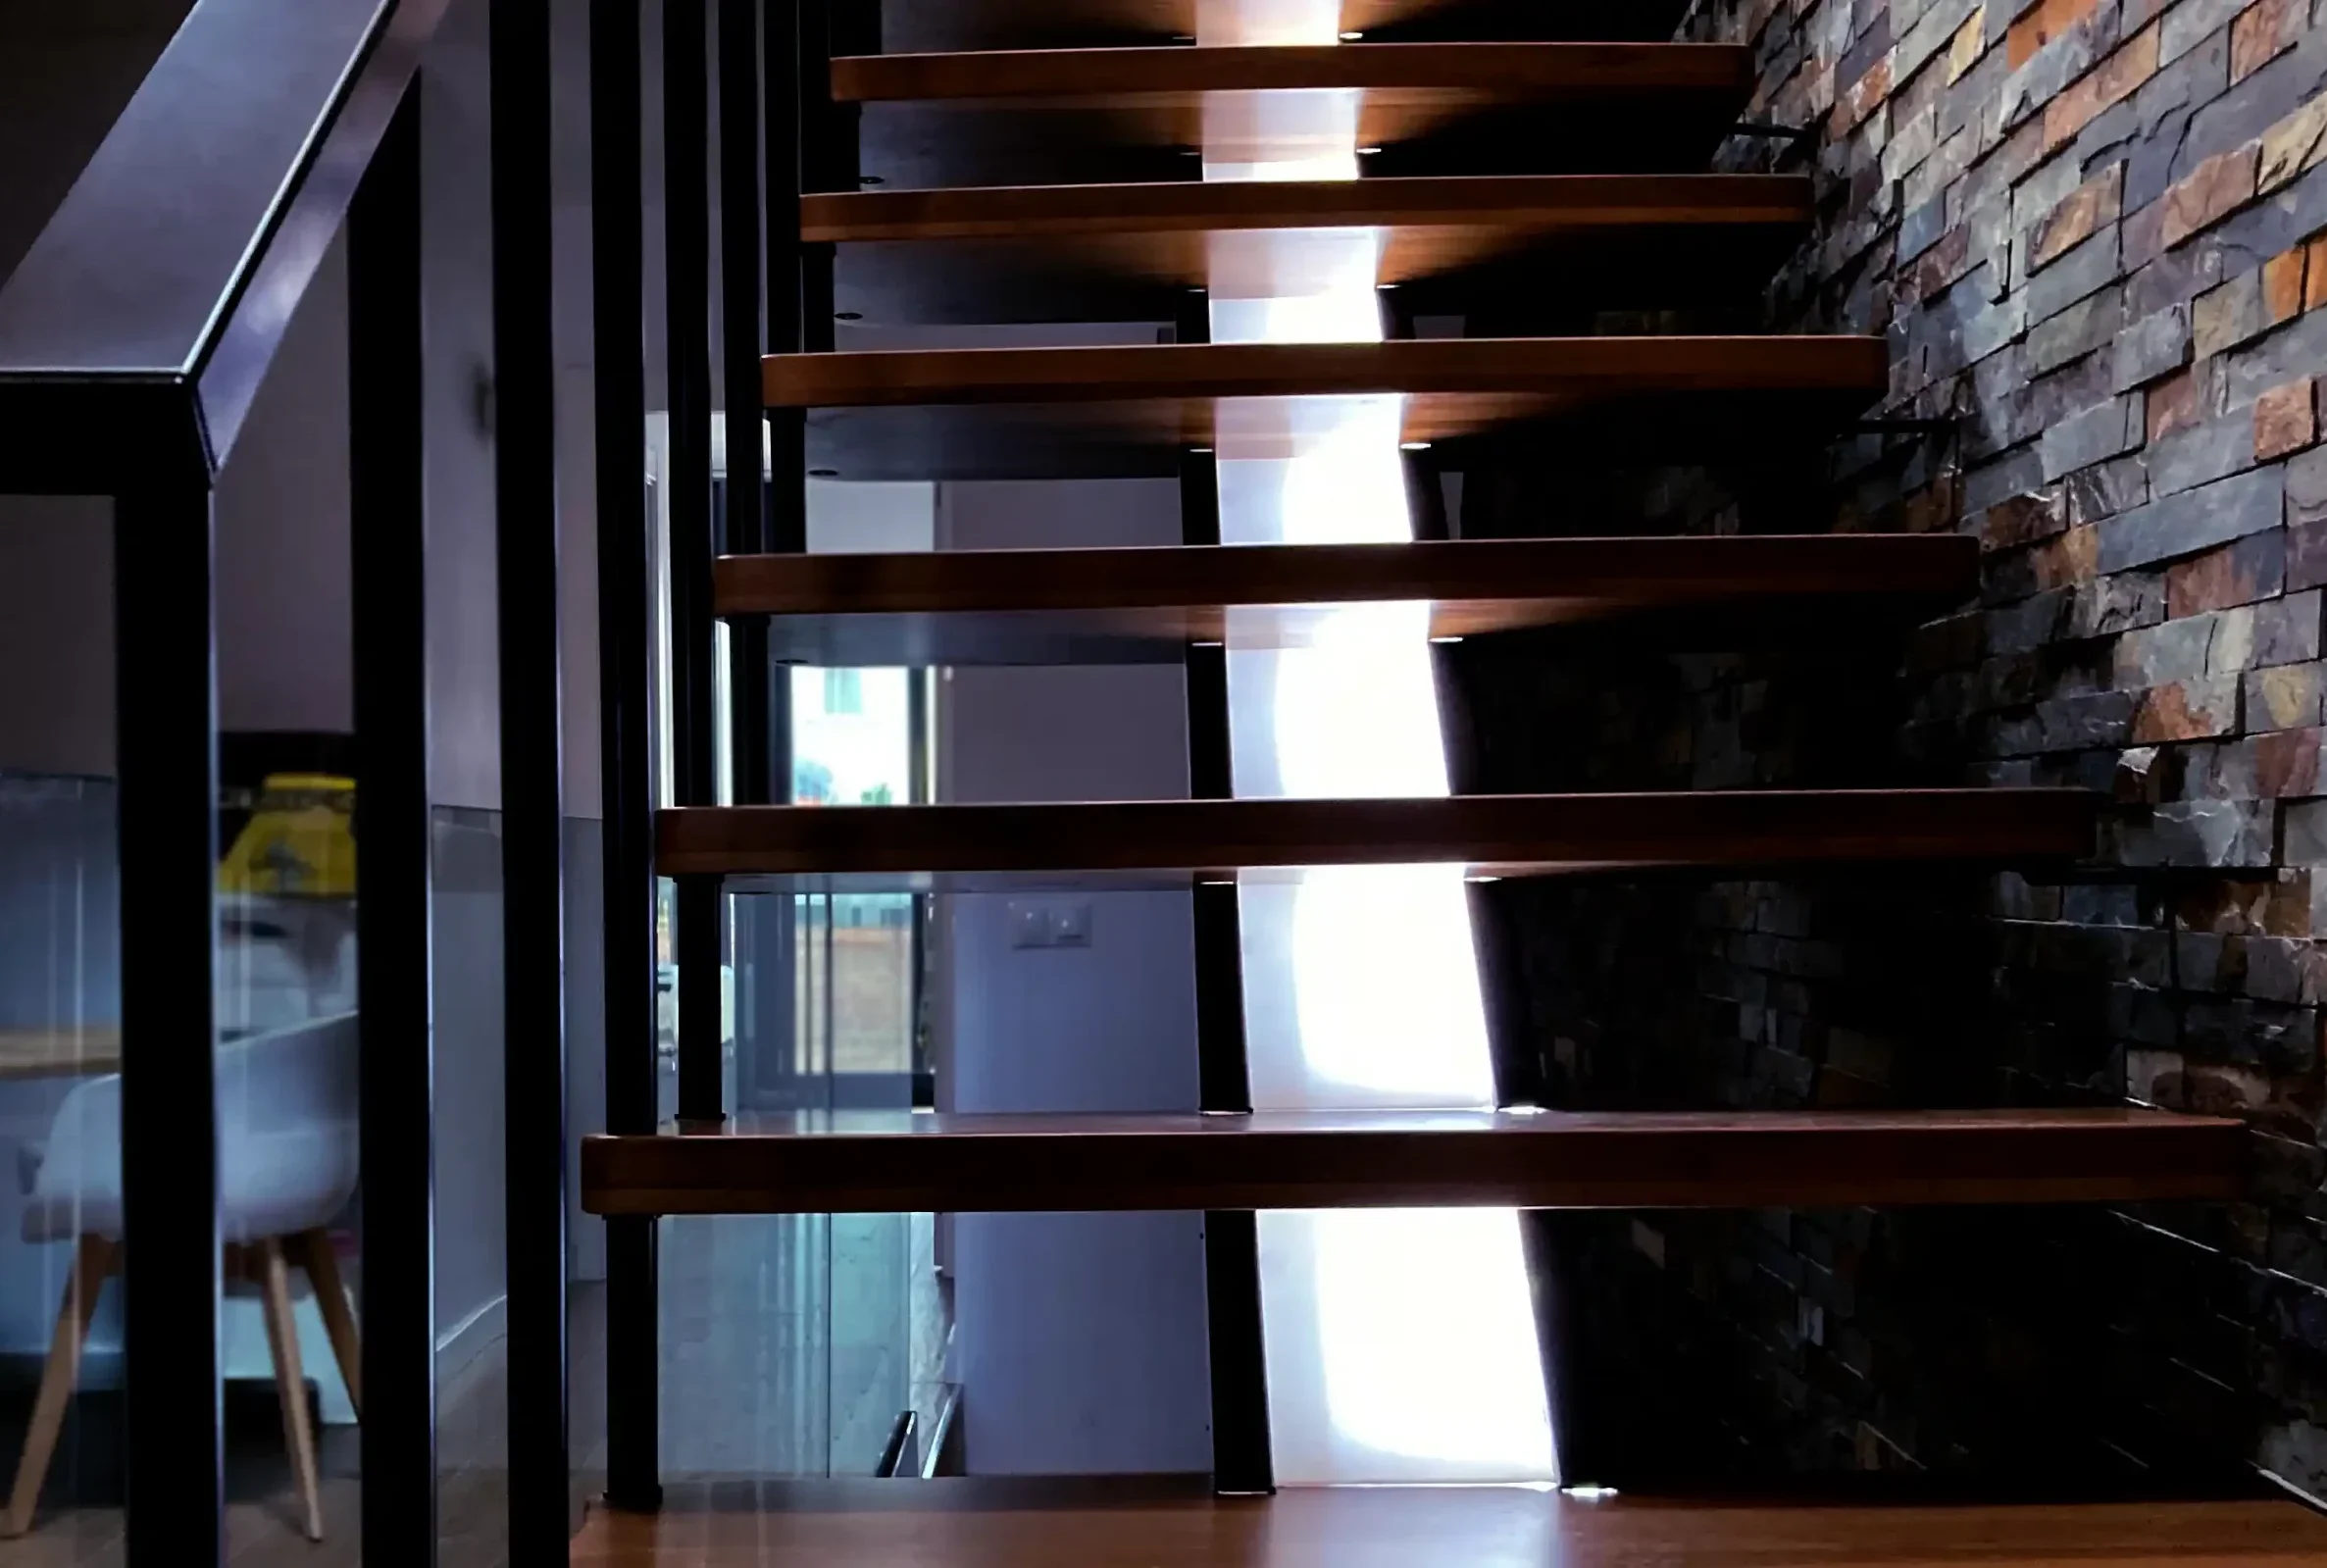 Escalera divine con luz horizontal a lo largo de la zanca central con peldaños de madera y estructura metalica